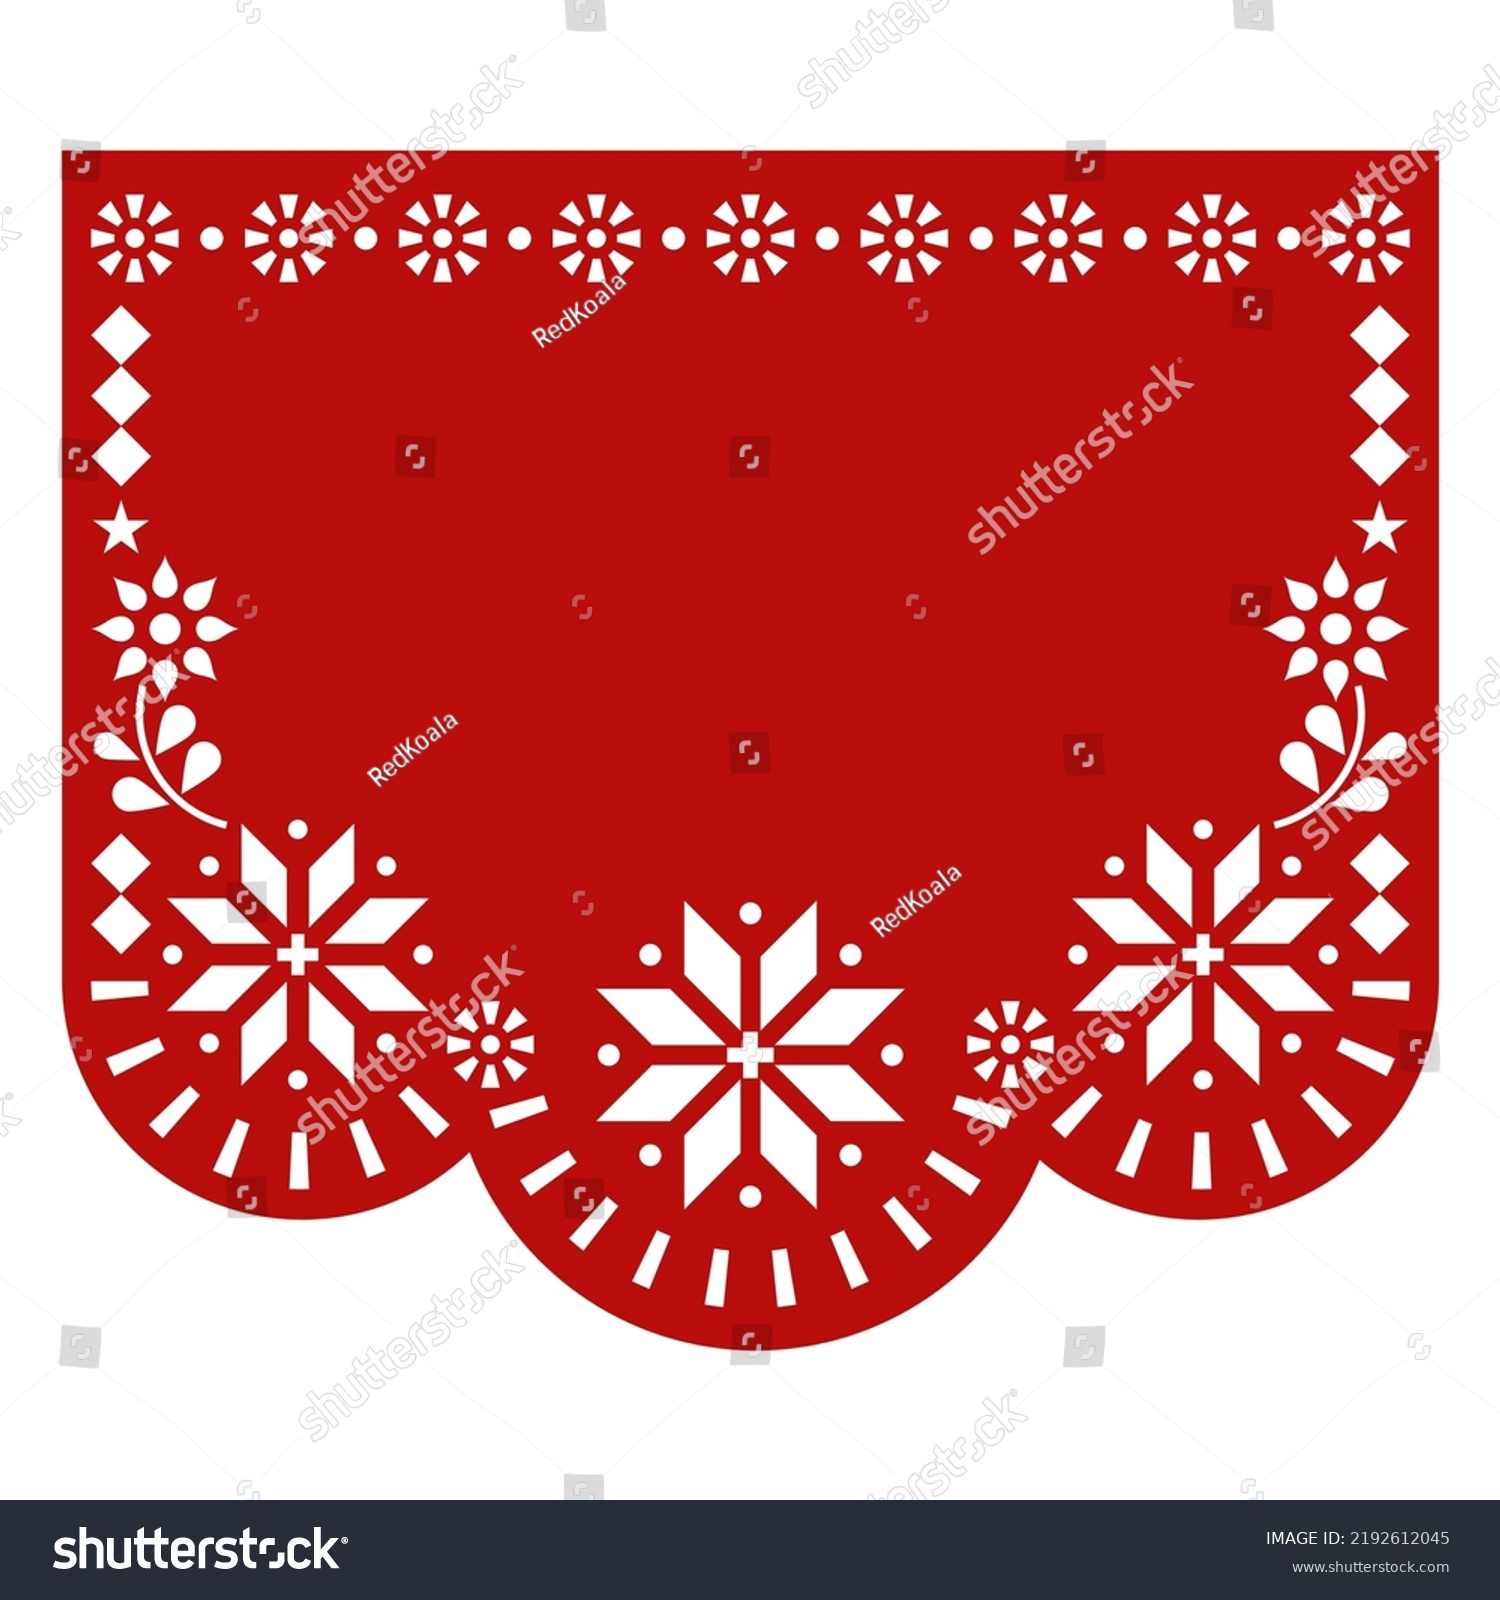 Christmas Papel Picado Vector Template Design Stock Vector Royalty Free 2192612045 Shutterstock 9871